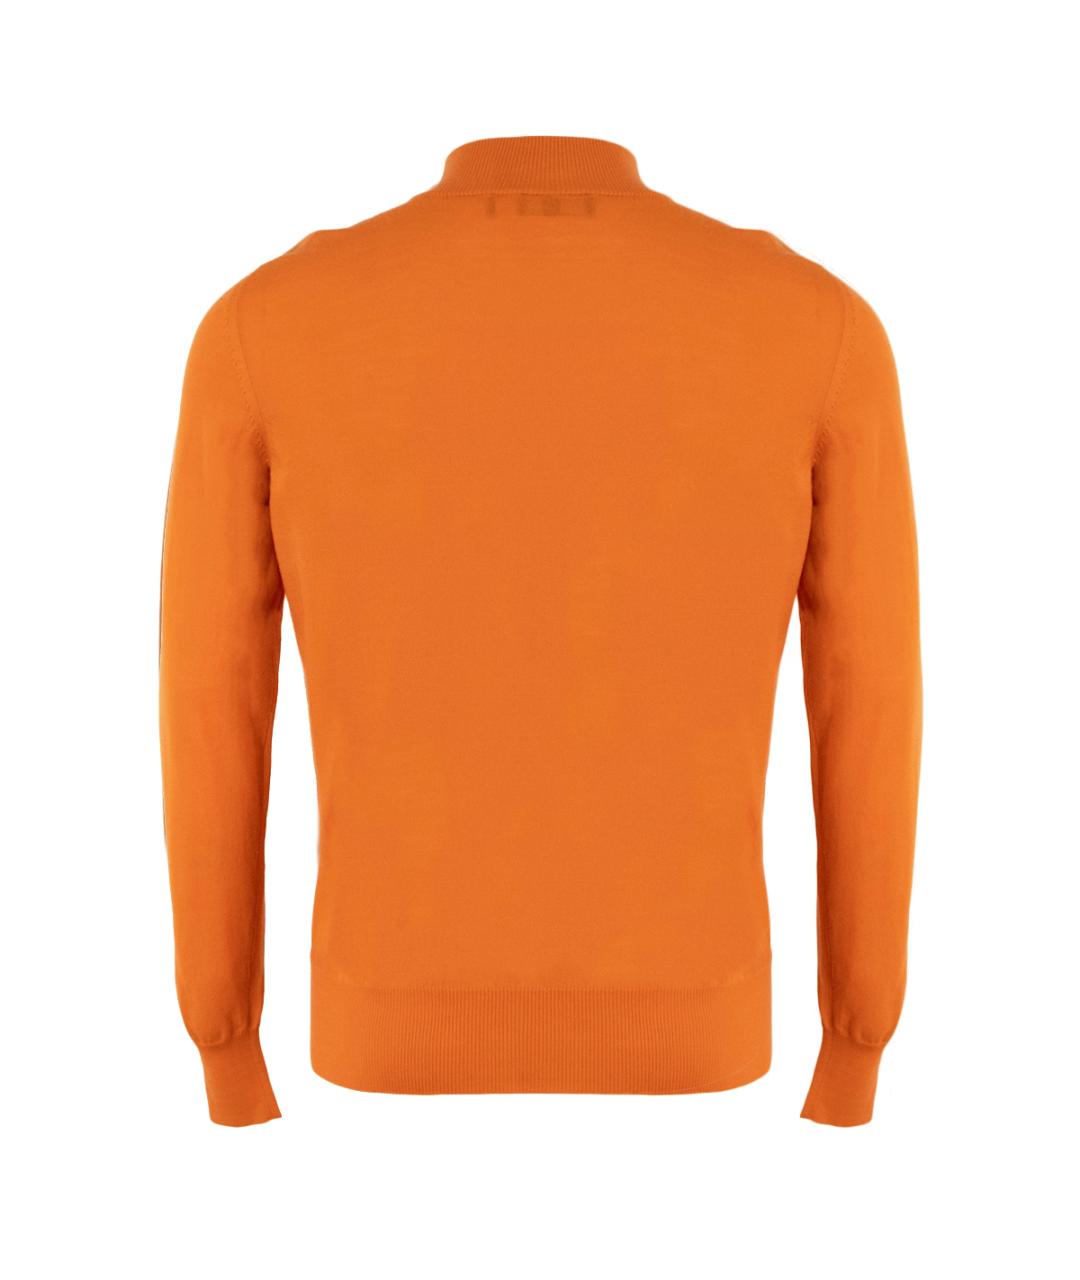 CORTIGIANI Оранжевый шерстяной джемпер / свитер, фото 2